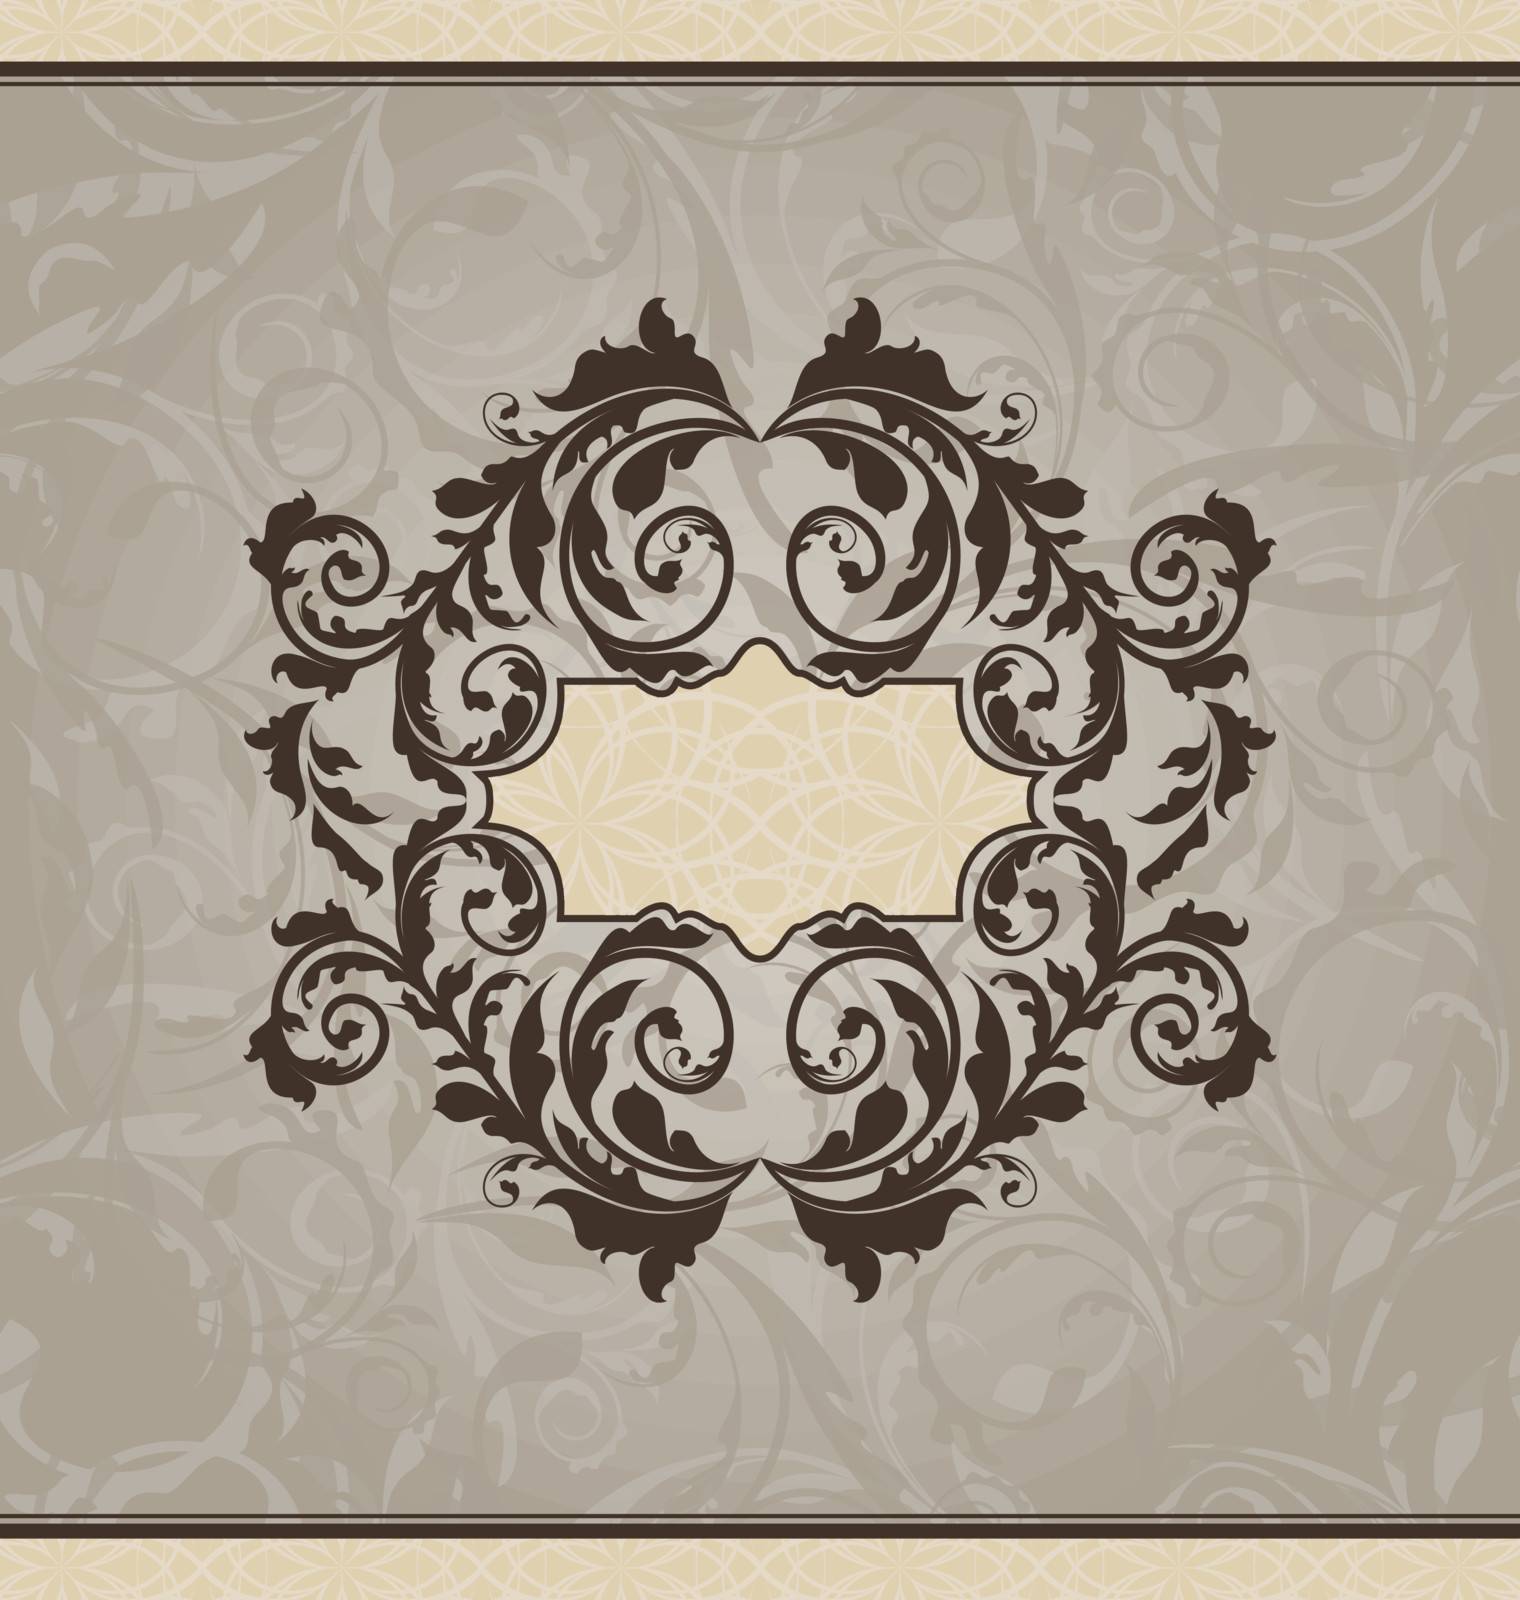 Revival ornamental card or invitation by smeagorl